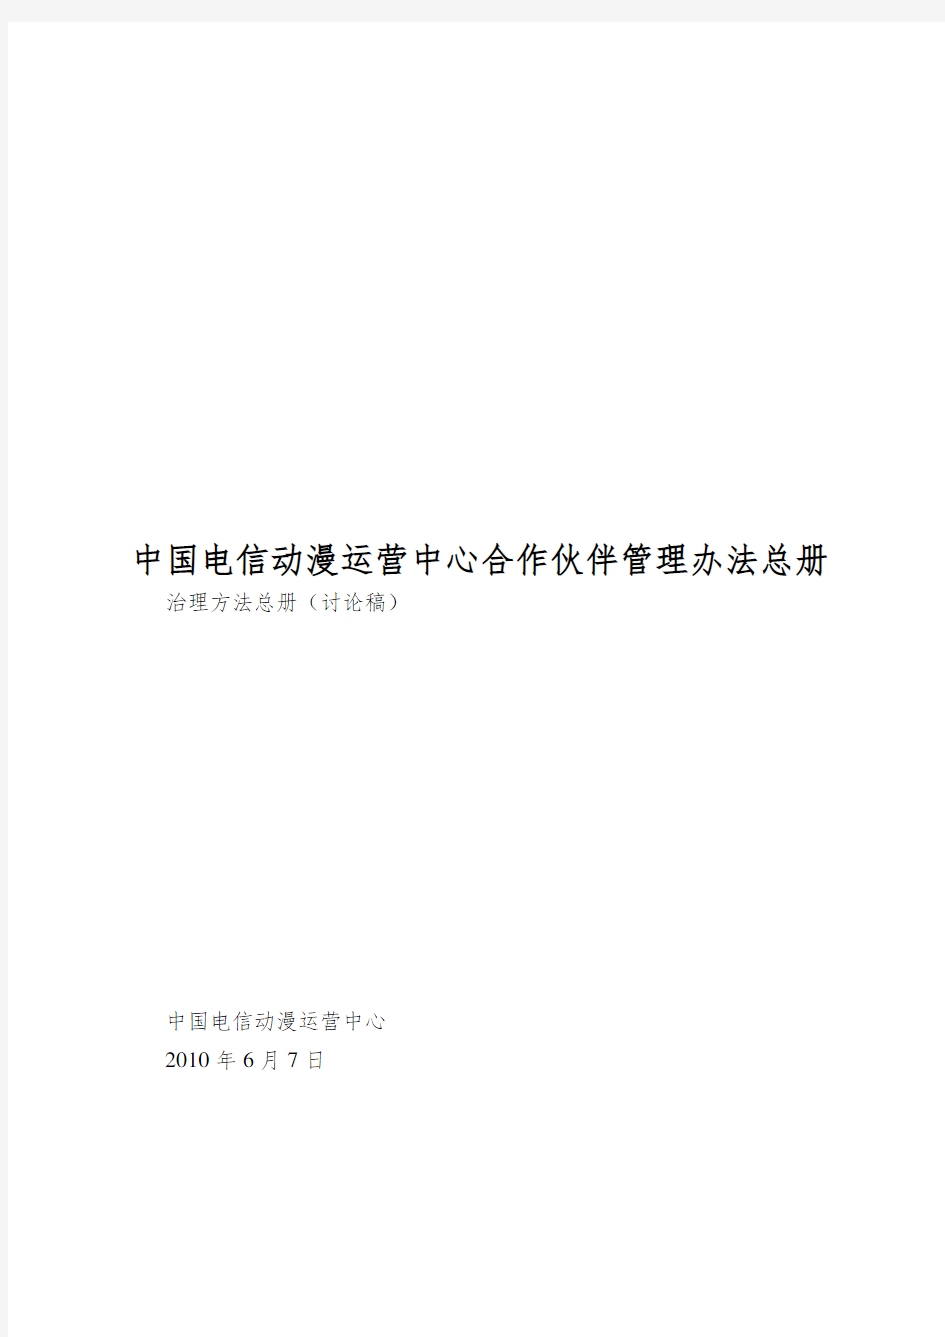 中国电信动漫运营中心合作伙伴管理办法总册